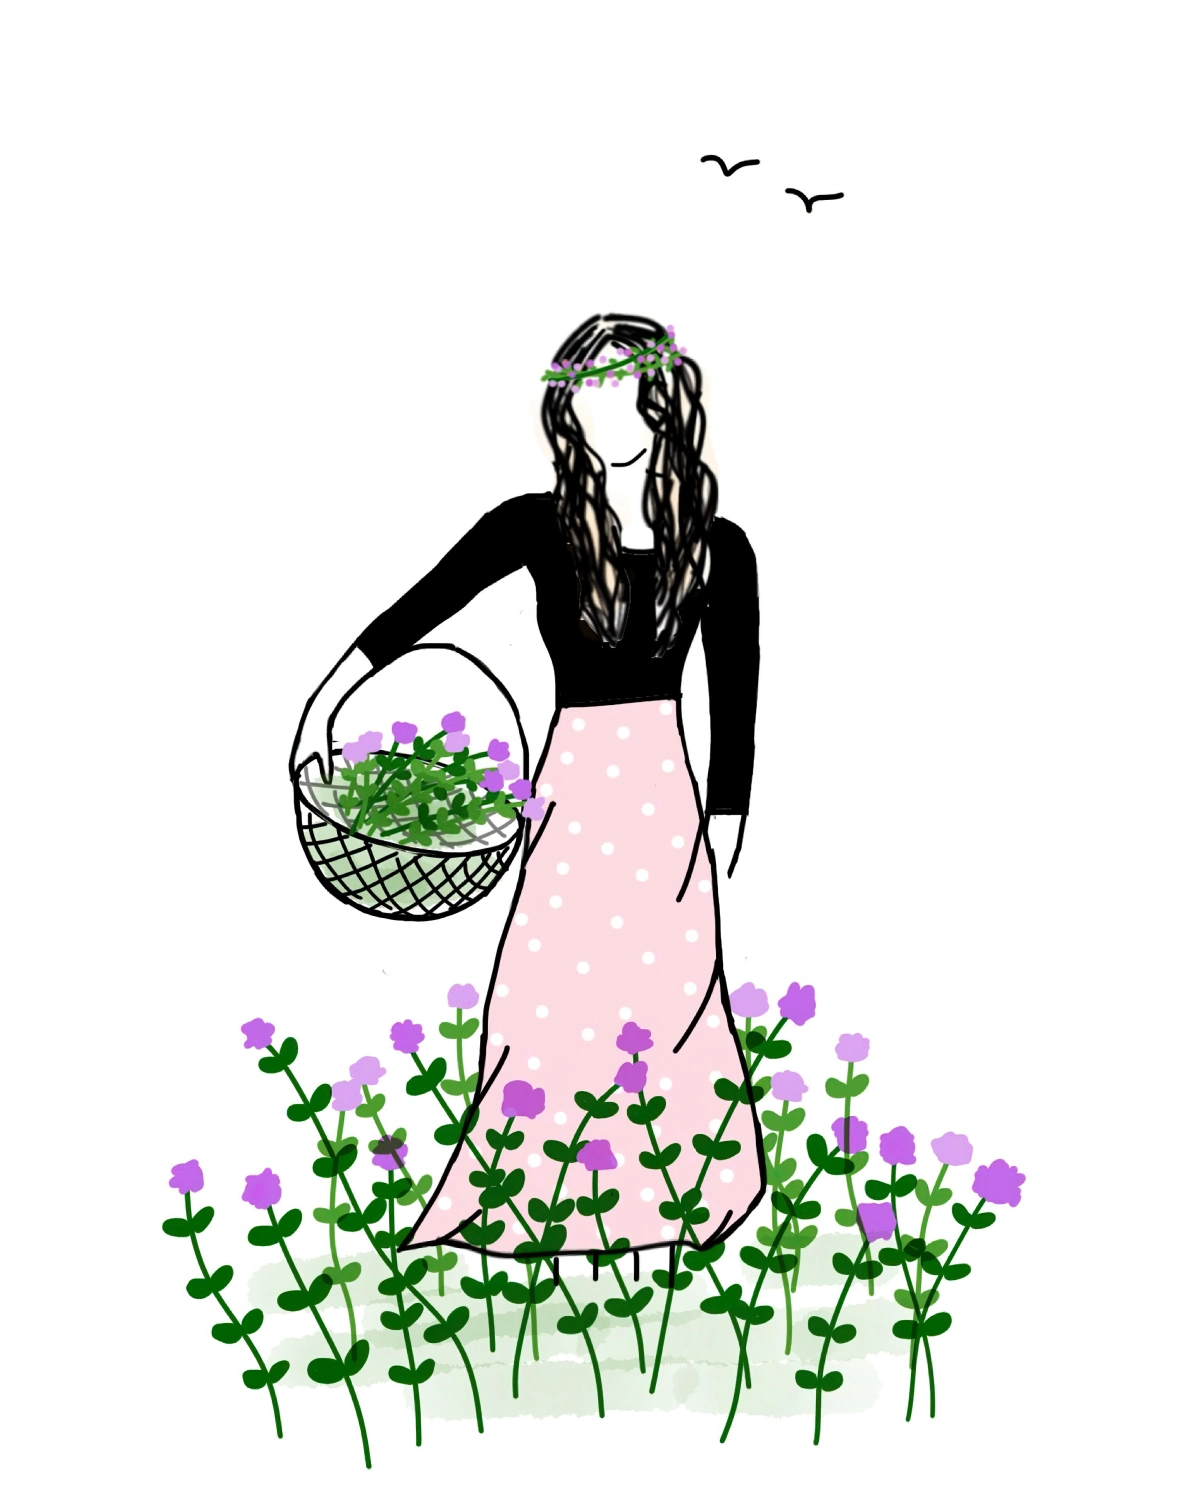 jupe rose dots blancs champs fleurs violettes vol oiseaux silhouette femme couronne